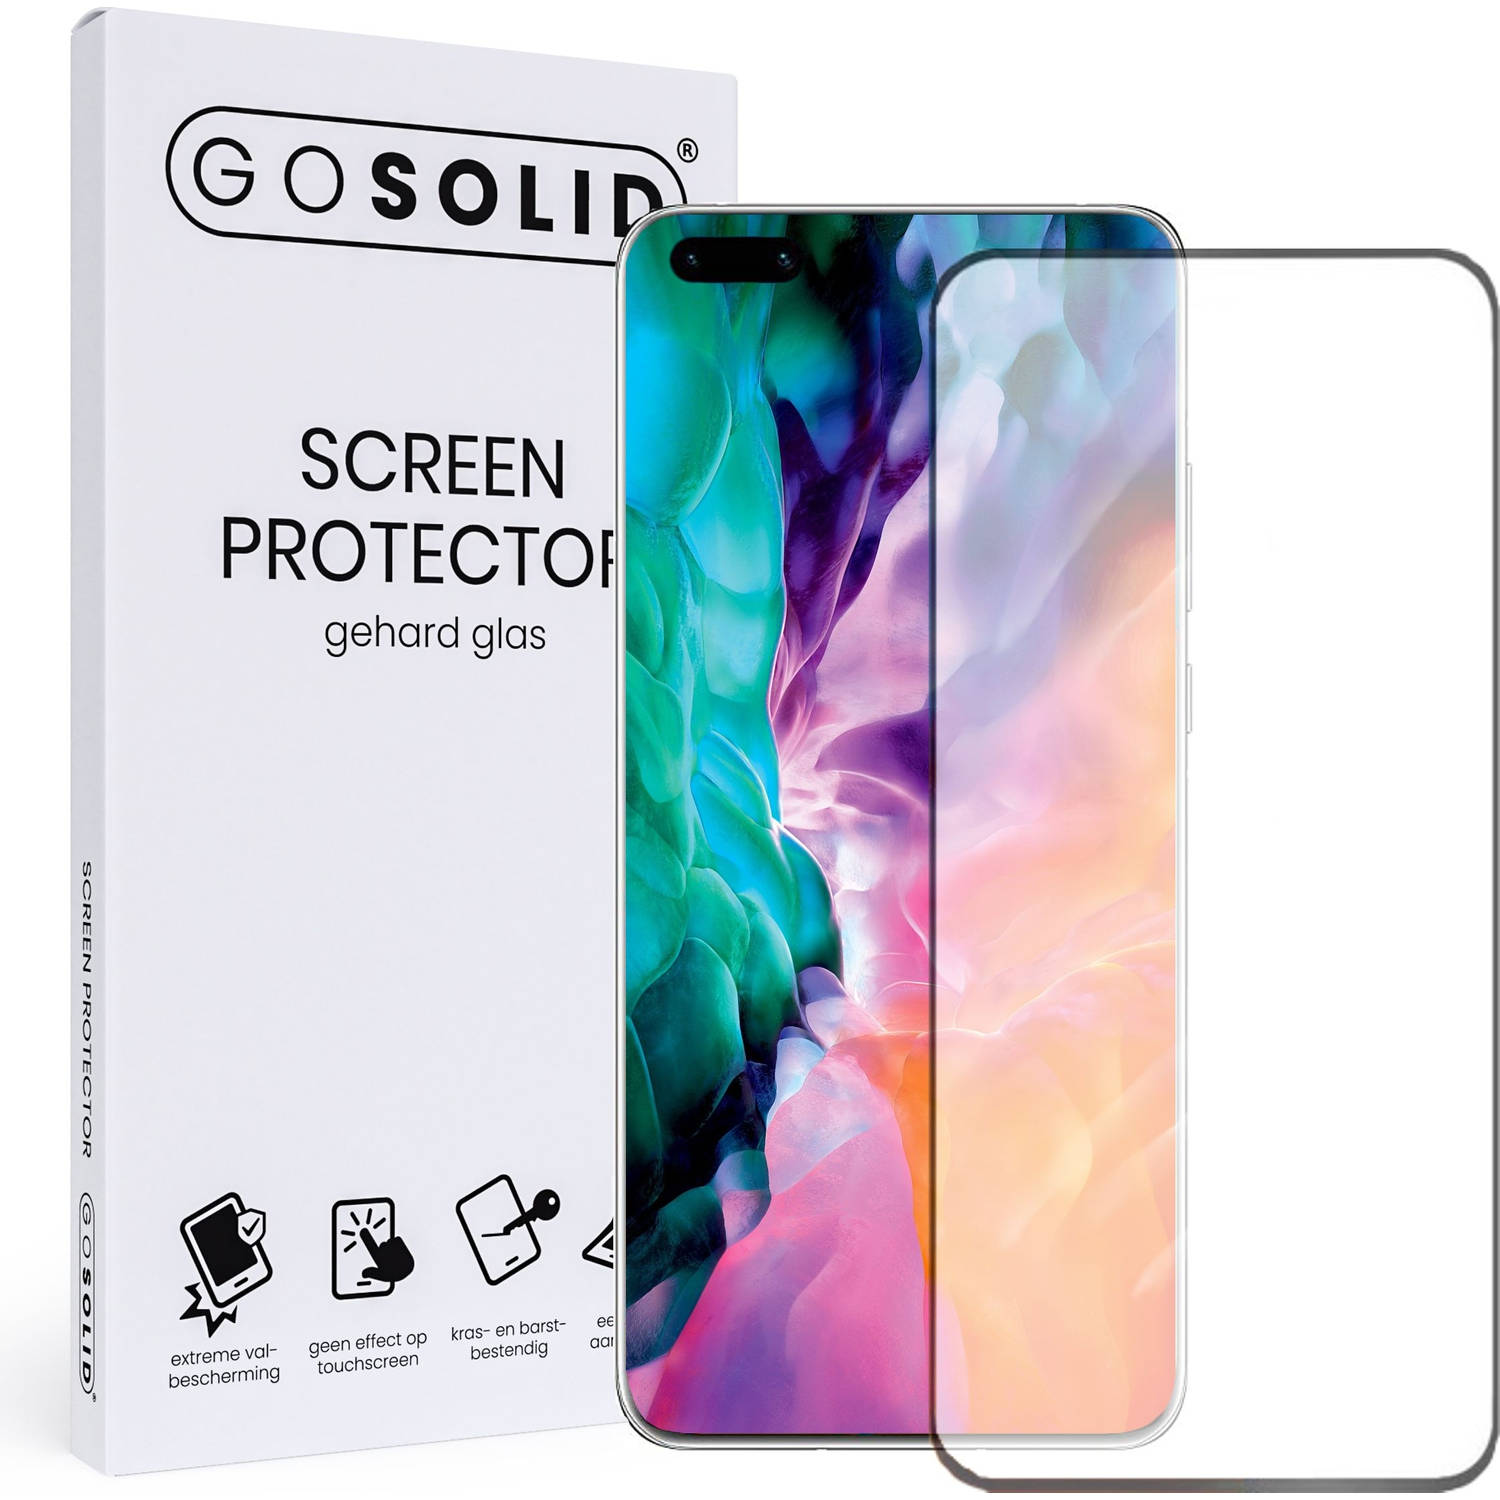 GO SOLID! Screenprotector voor Huawei P40 Pro+